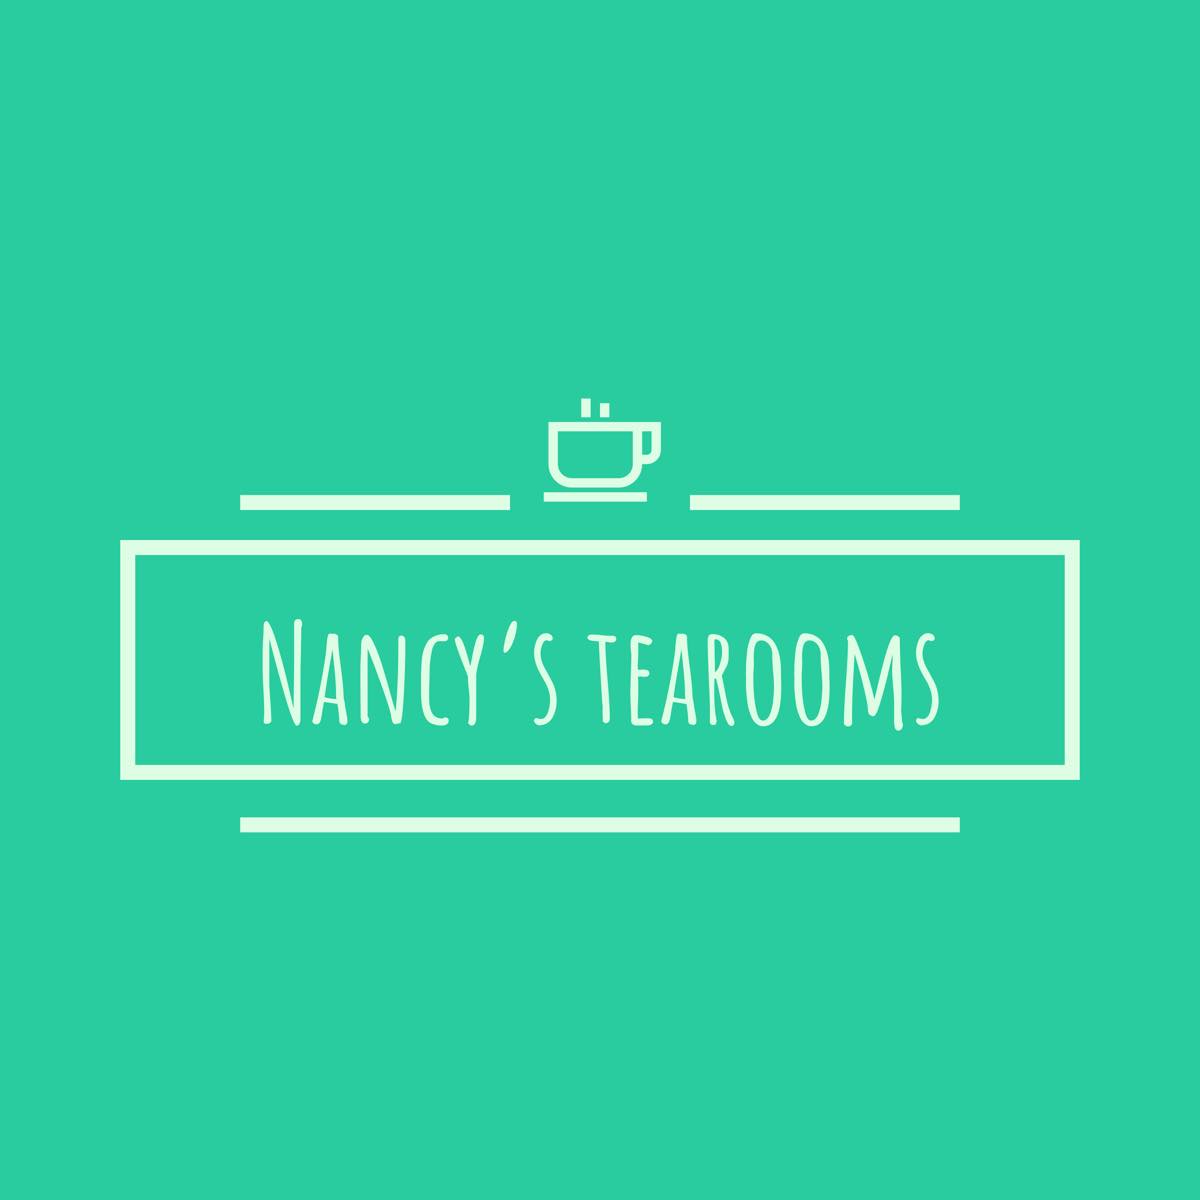 Nancy's Tearooms logo